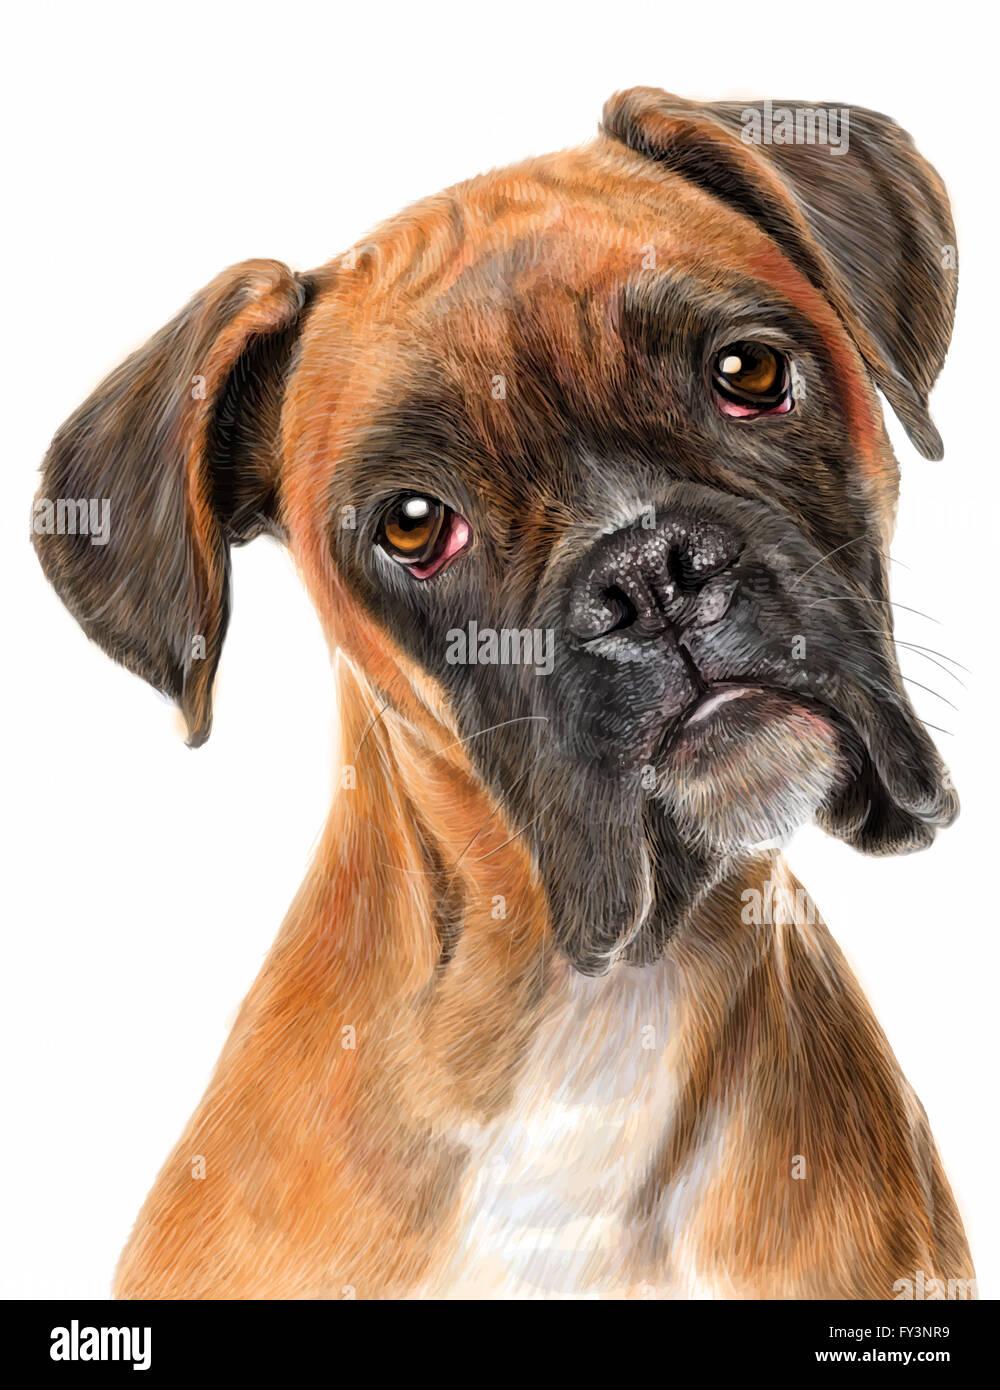 Boxer dog hand draw on white background illustration Stock Photo - Alamy